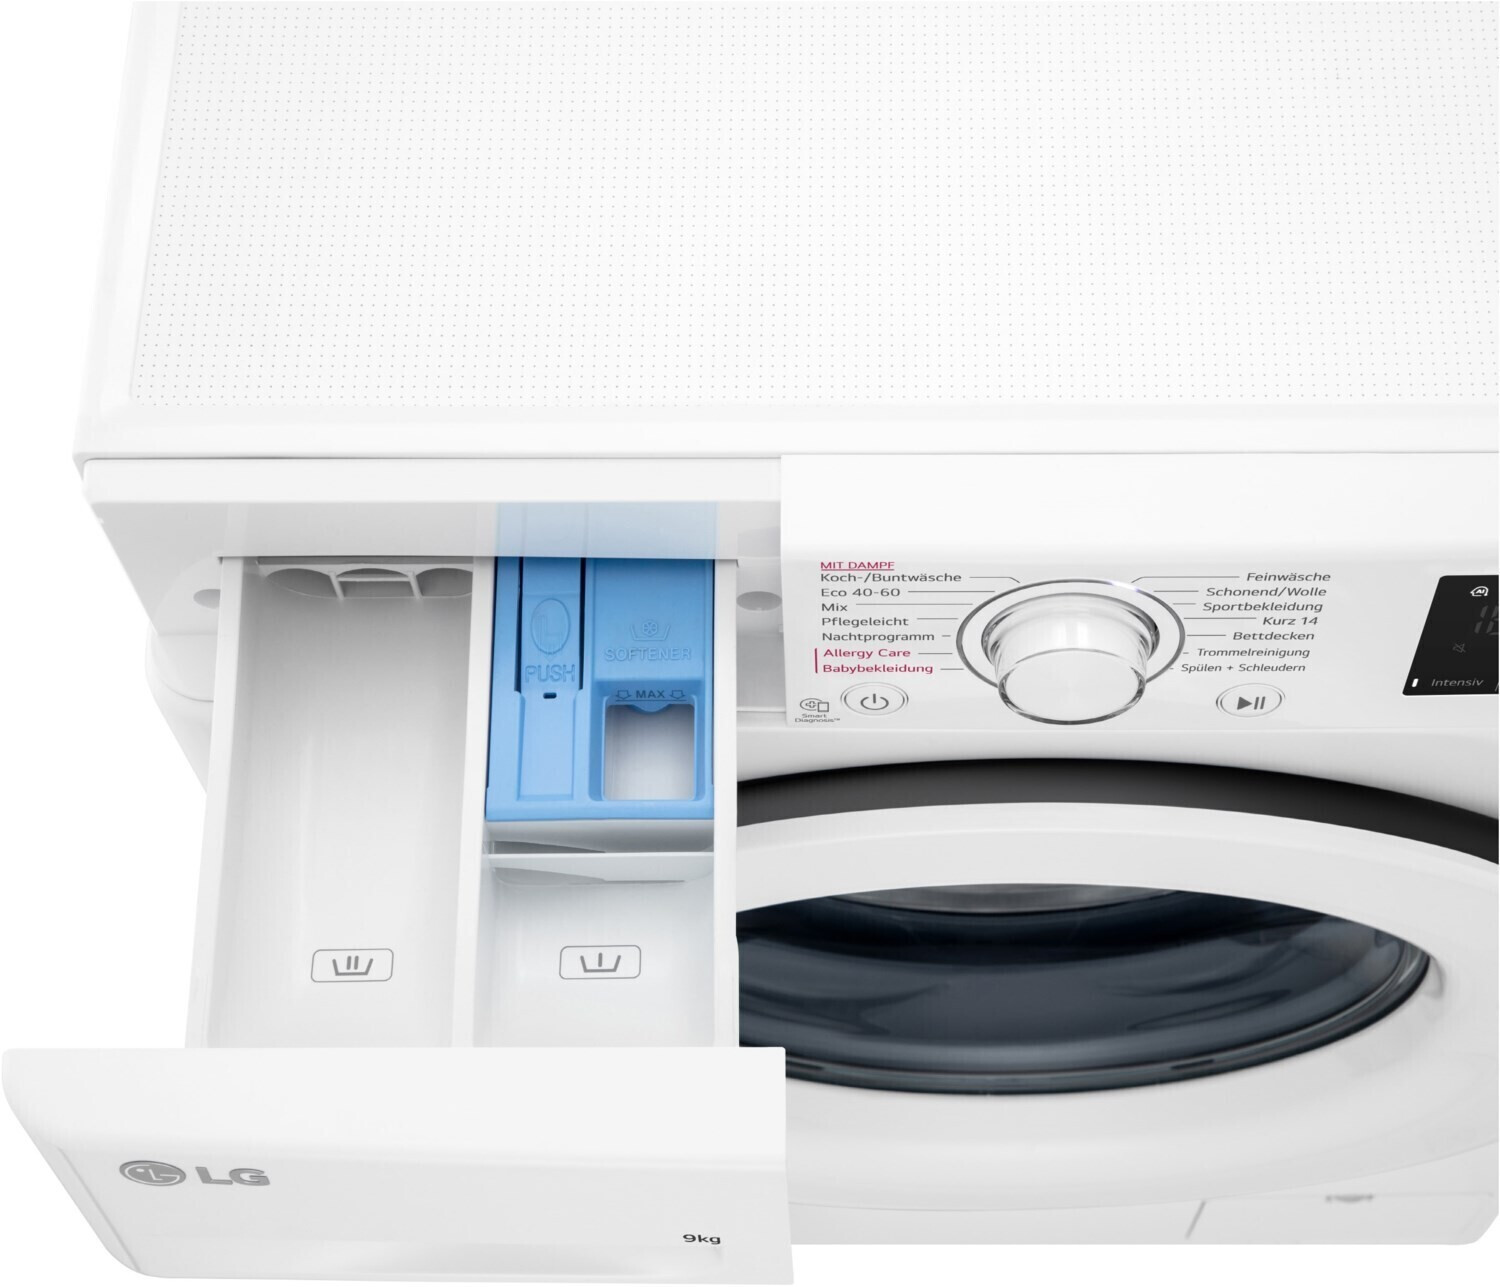 LG F4WV3193 Waschmaschine Frontader